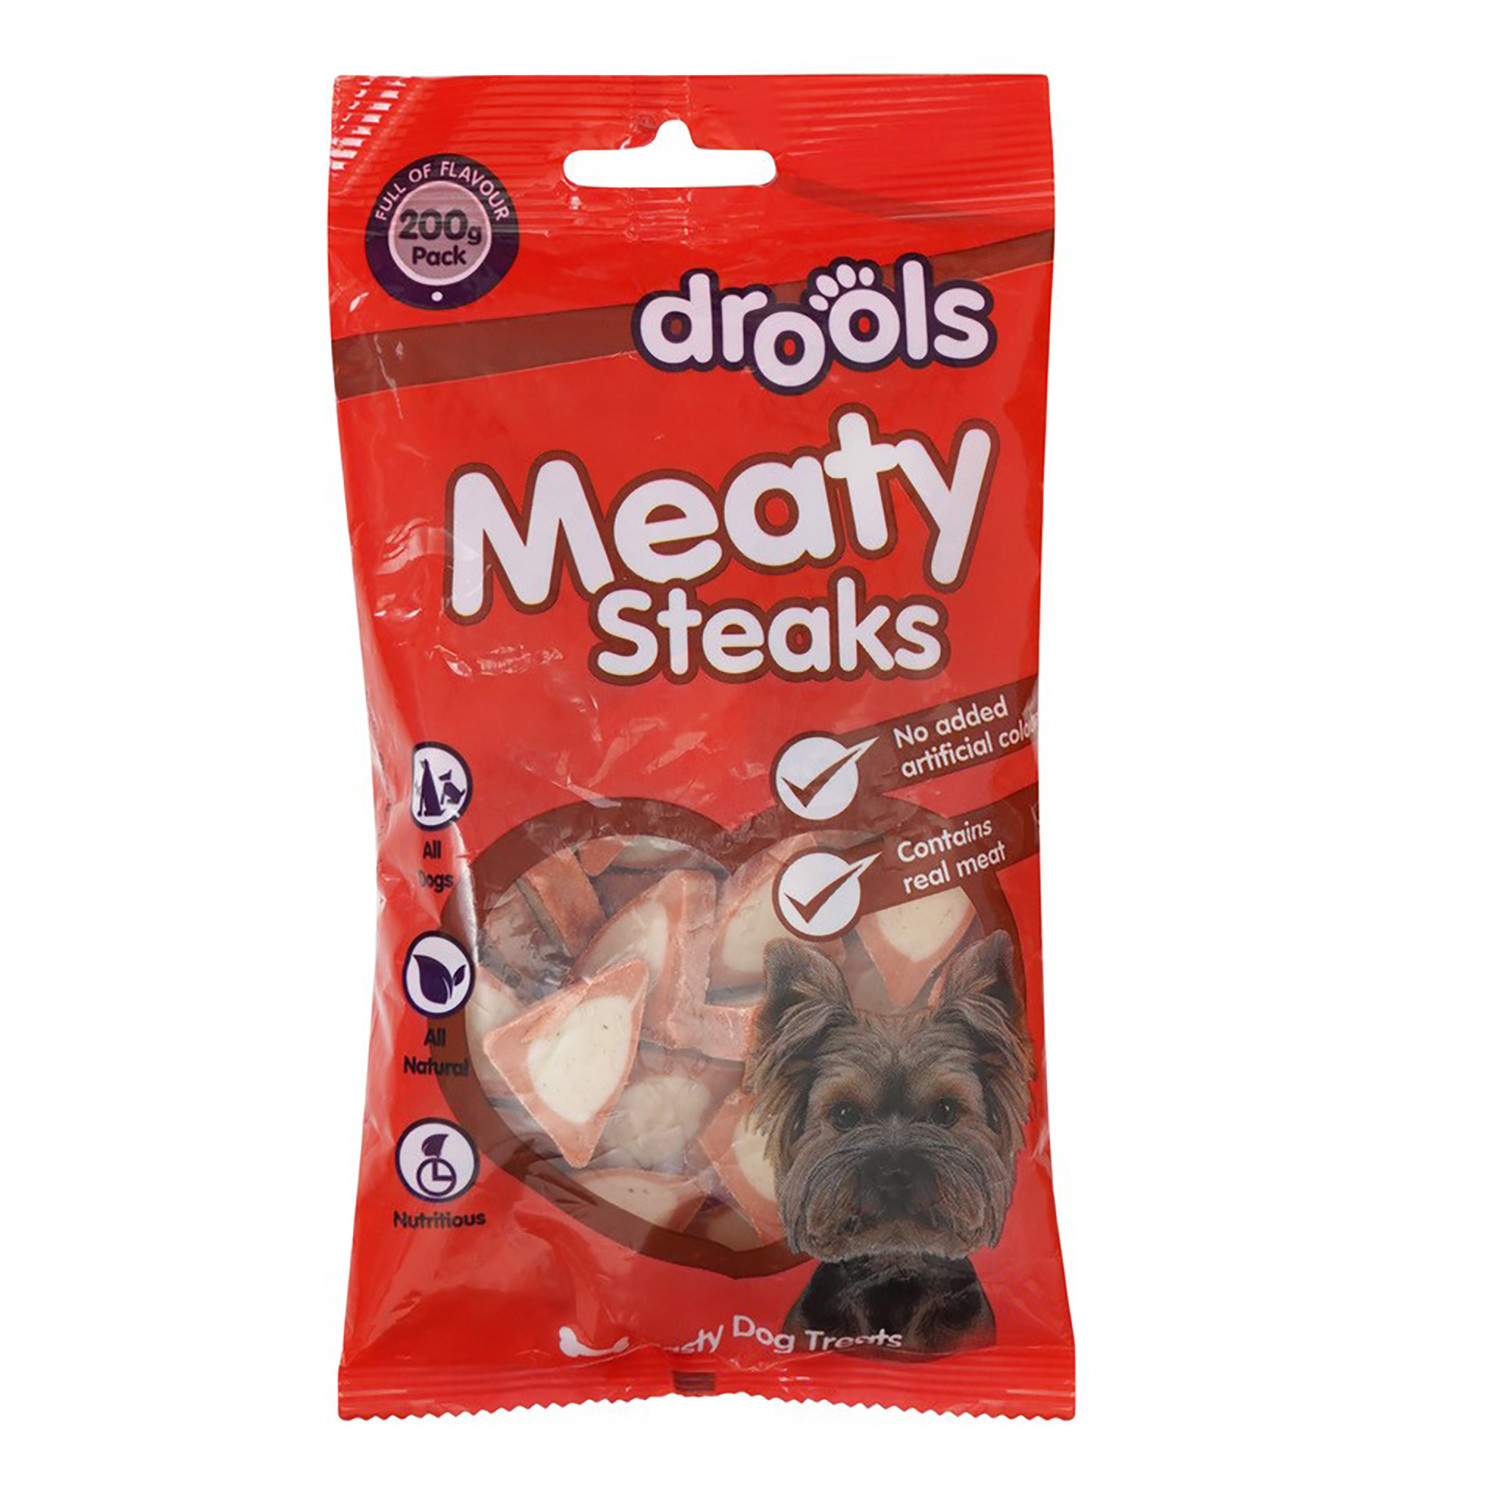 Drools Meaty Steaks Image